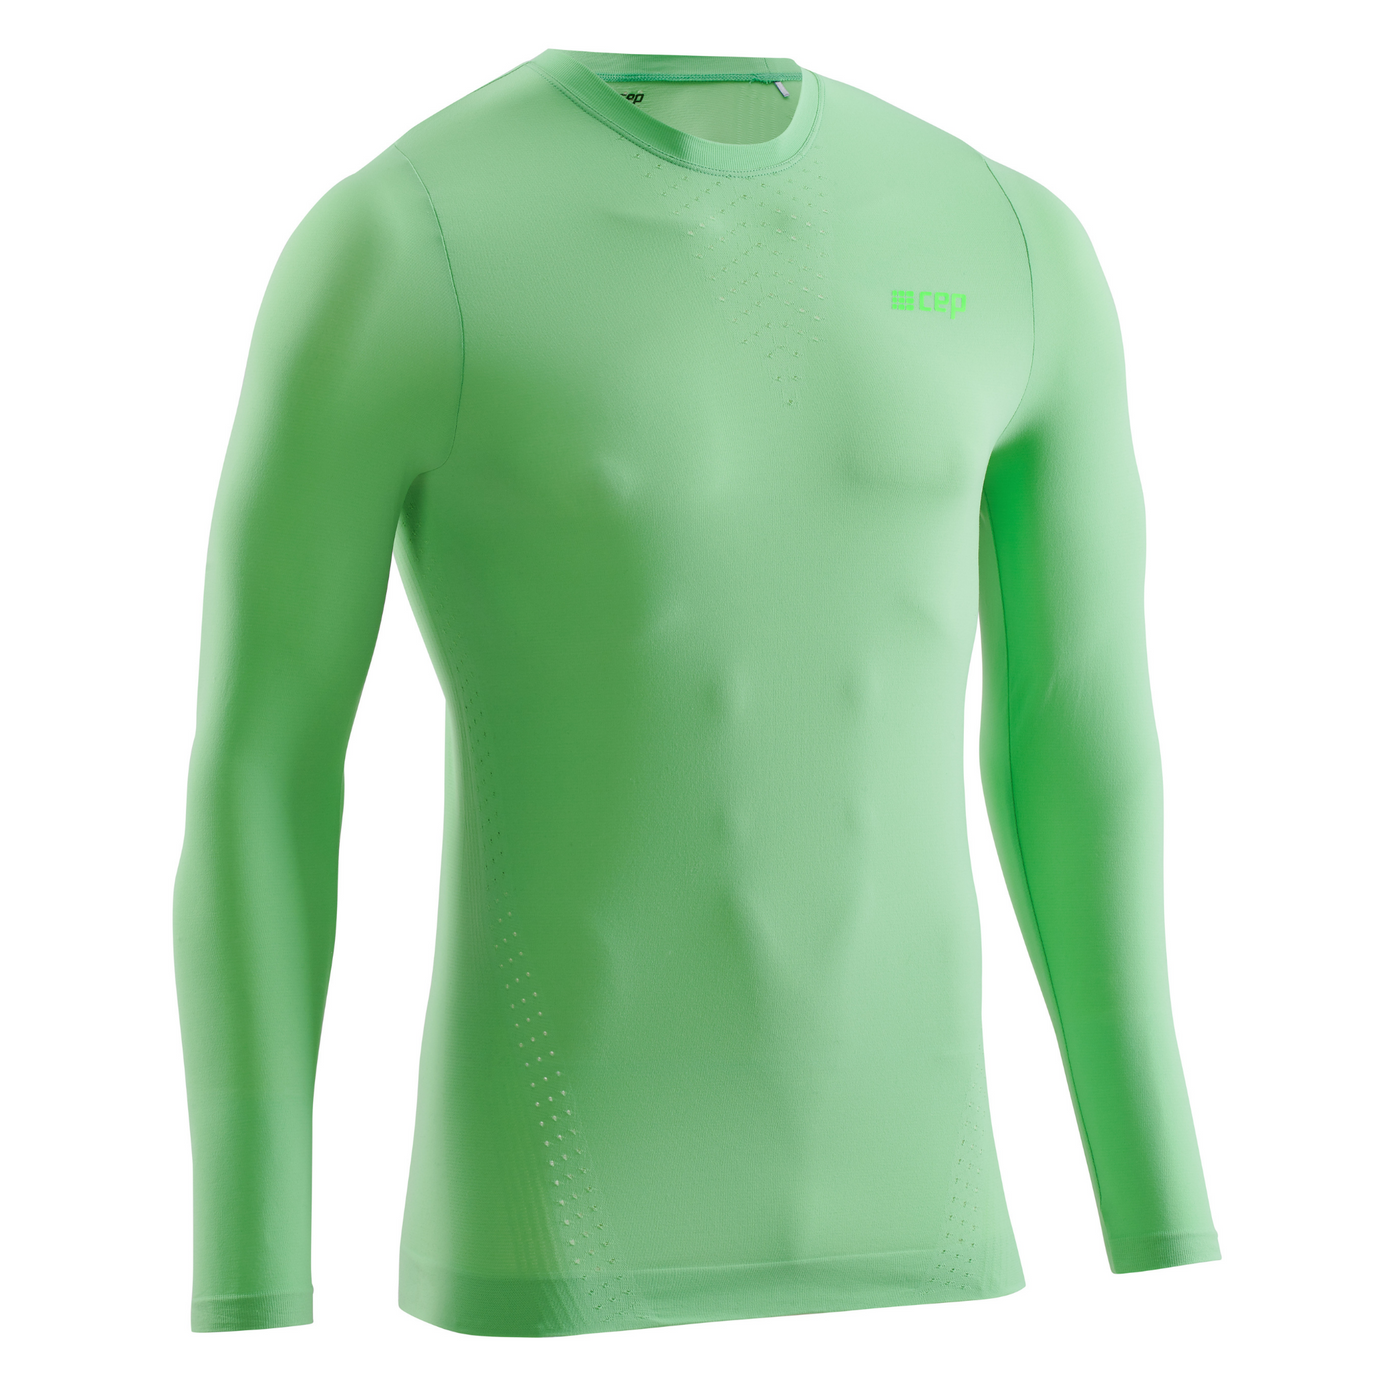 Ultralight Long Sleeve Shirt, Men, Green, Front View